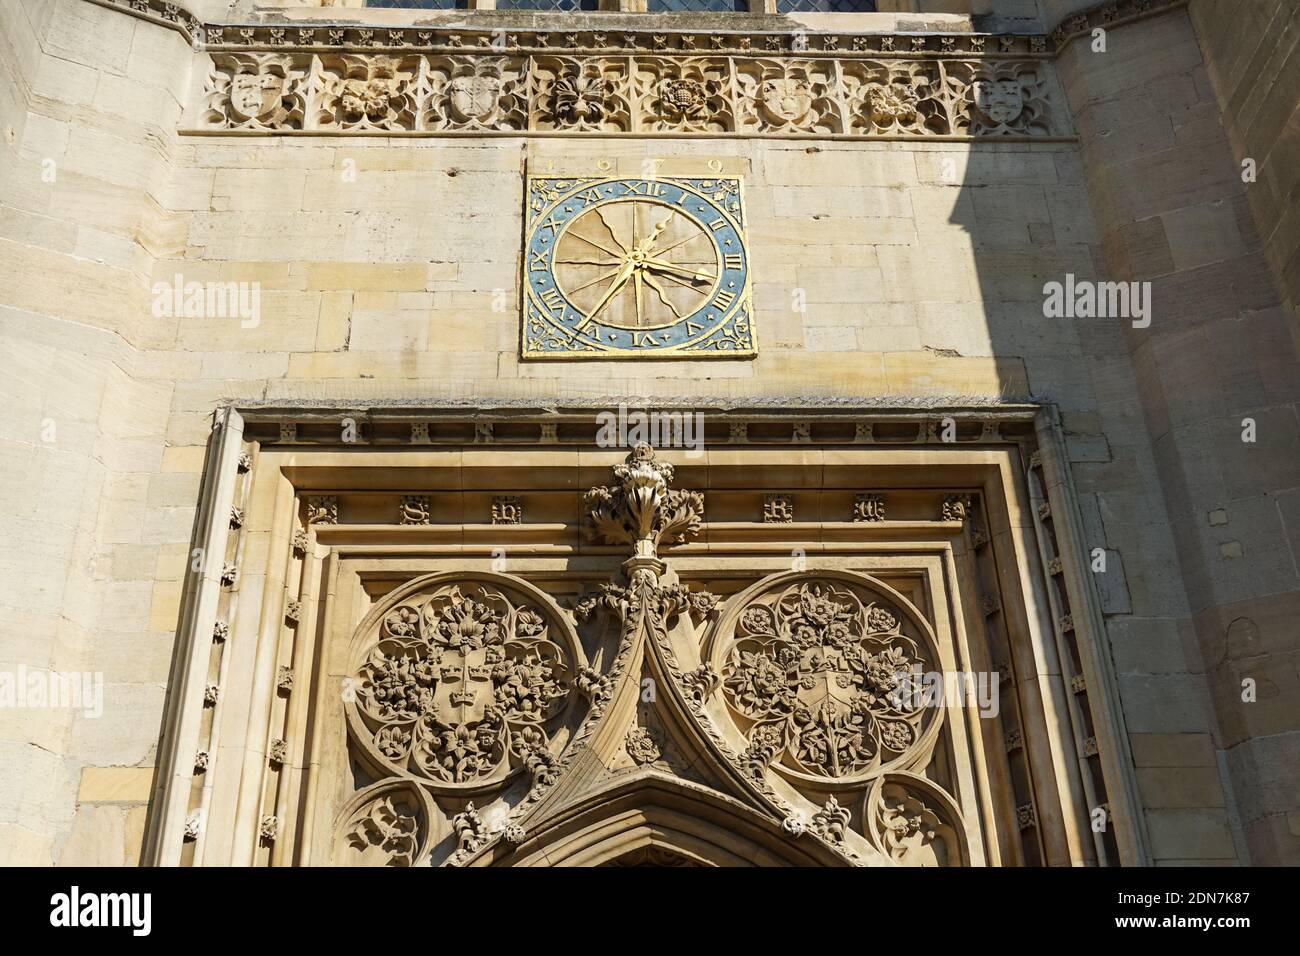 Ornements de sculpture au-dessus de l'entrée de la Grande Sainte Marie, l'église universitaire, Cambridge Cambridgeshire Angleterre Royaume-Uni Banque D'Images